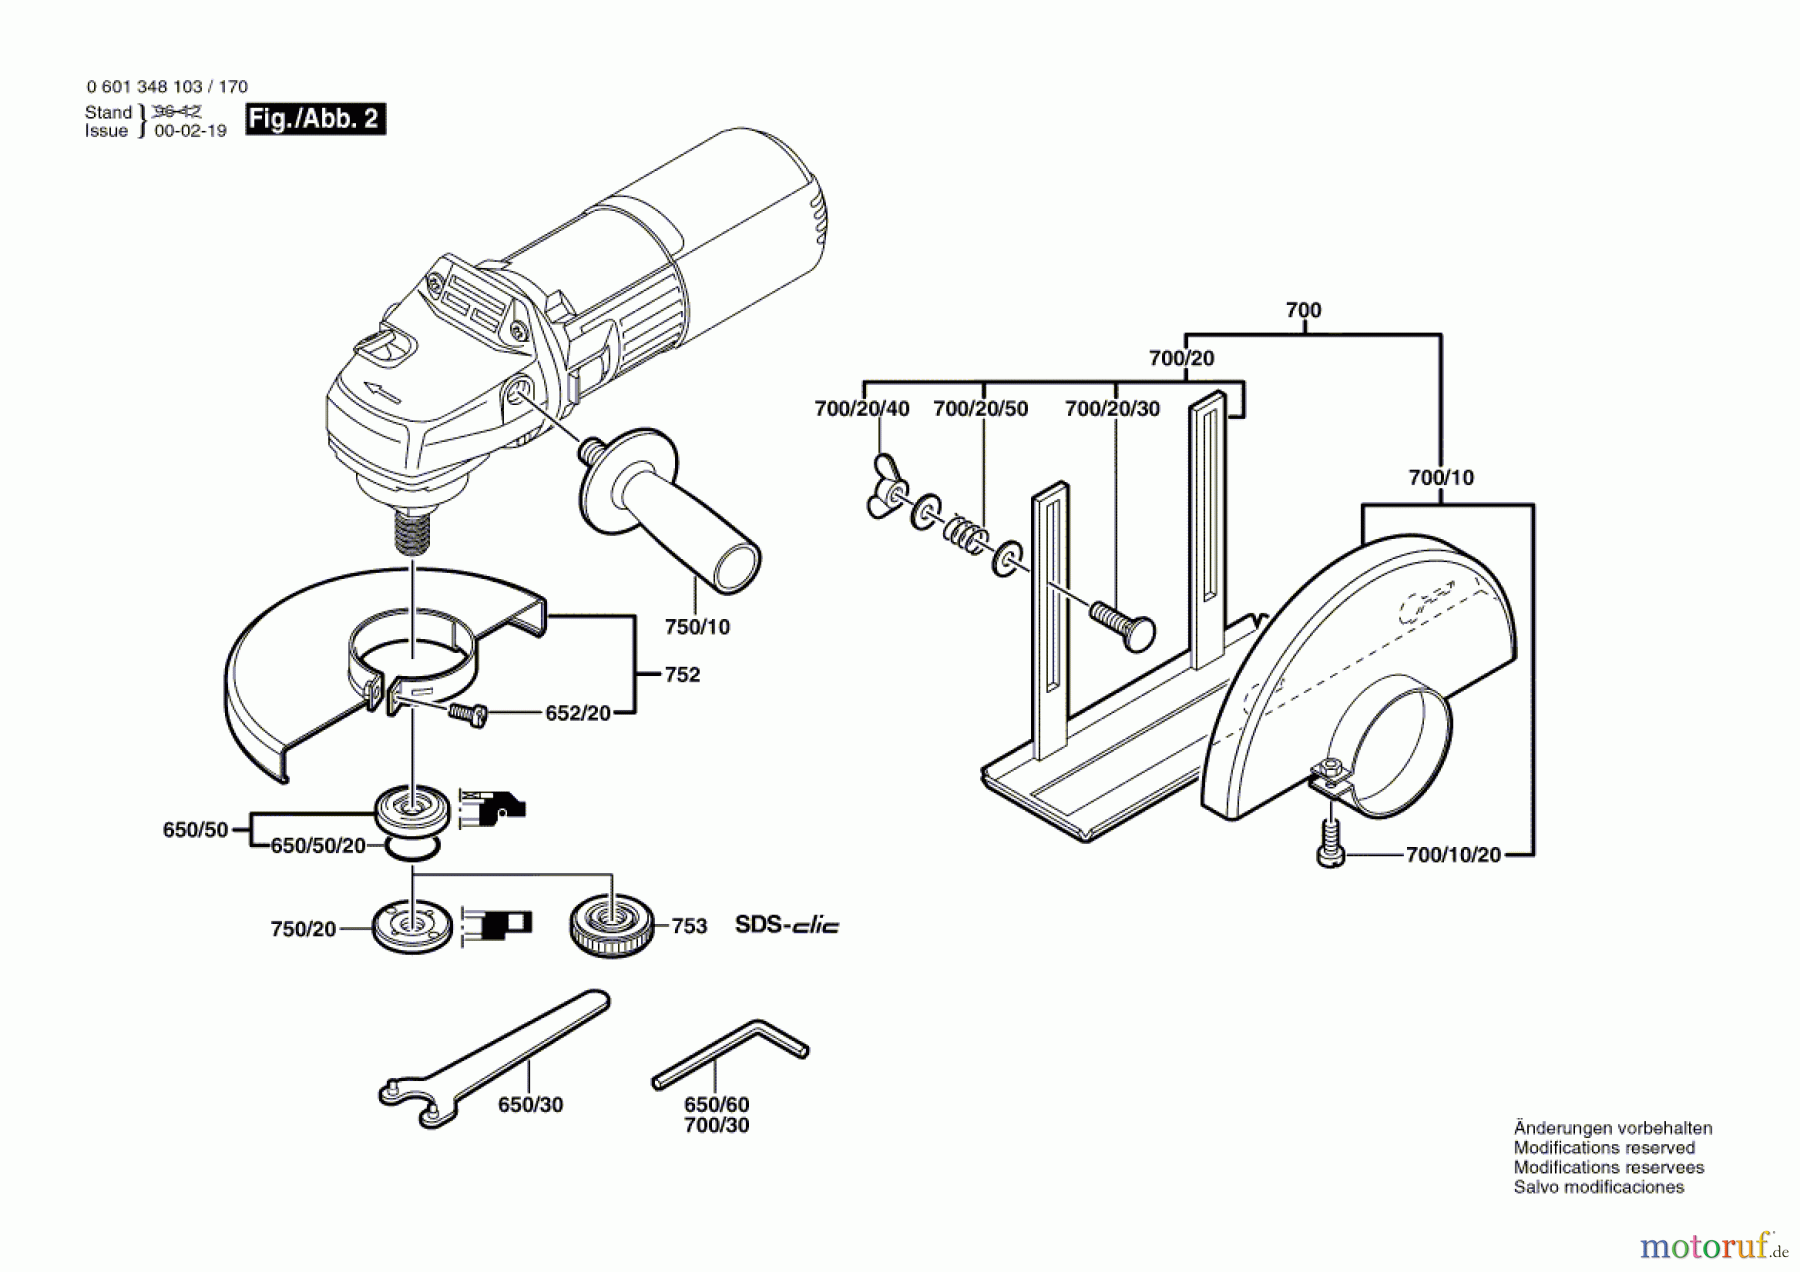  Bosch Werkzeug Winkelschleifer GWS 7-125 Seite 2